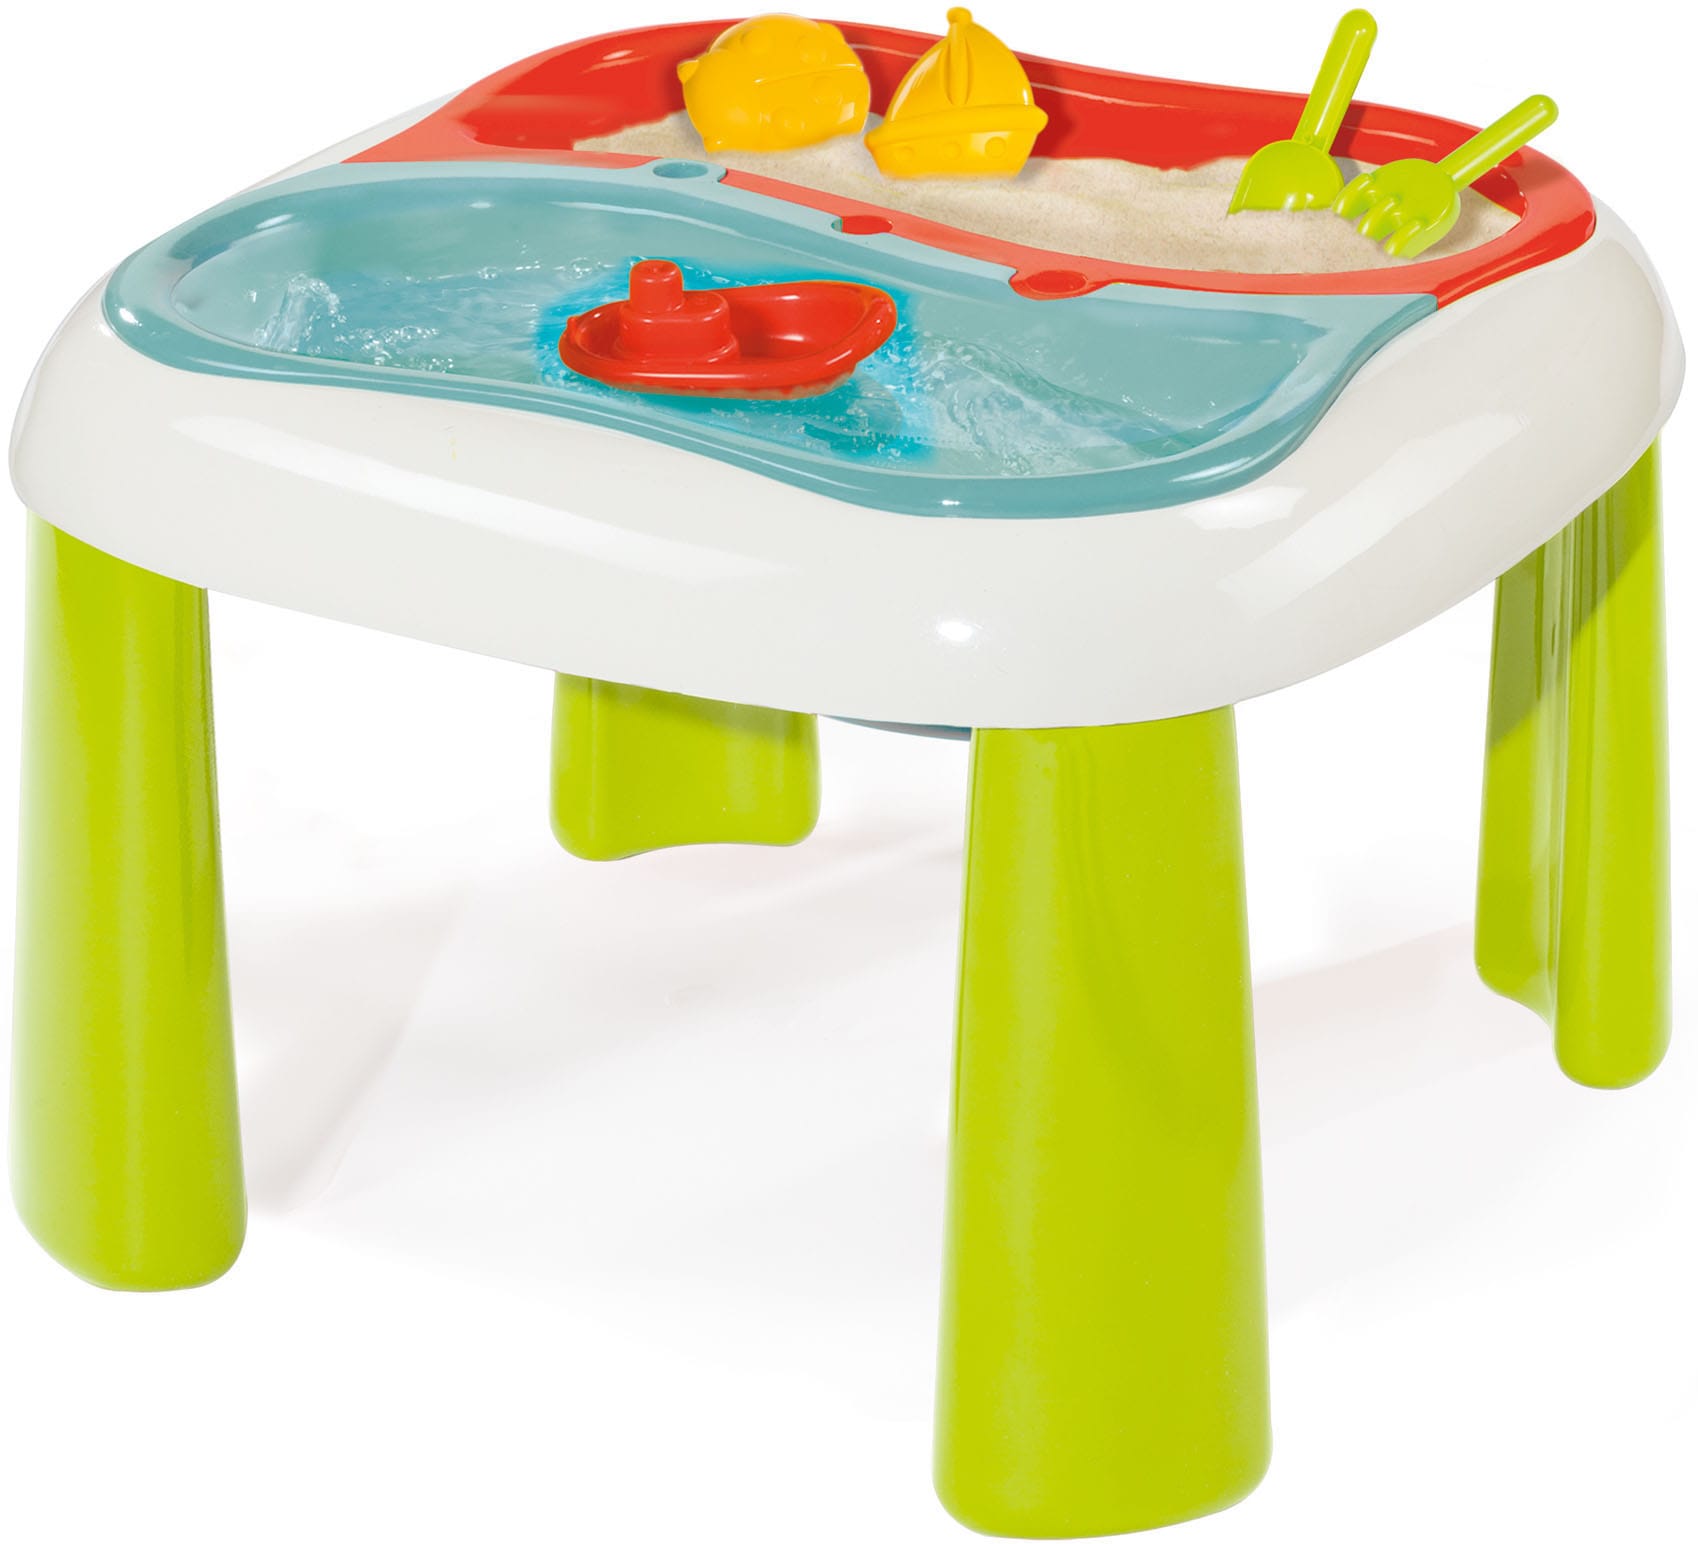 Smoby Spieltisch SMOBY "Sand- und Wasserspieltisch" Spieltische bunt Kinder Ab 18 Monaten mit 2 herausnehmbaren Wannen; Made in Europe